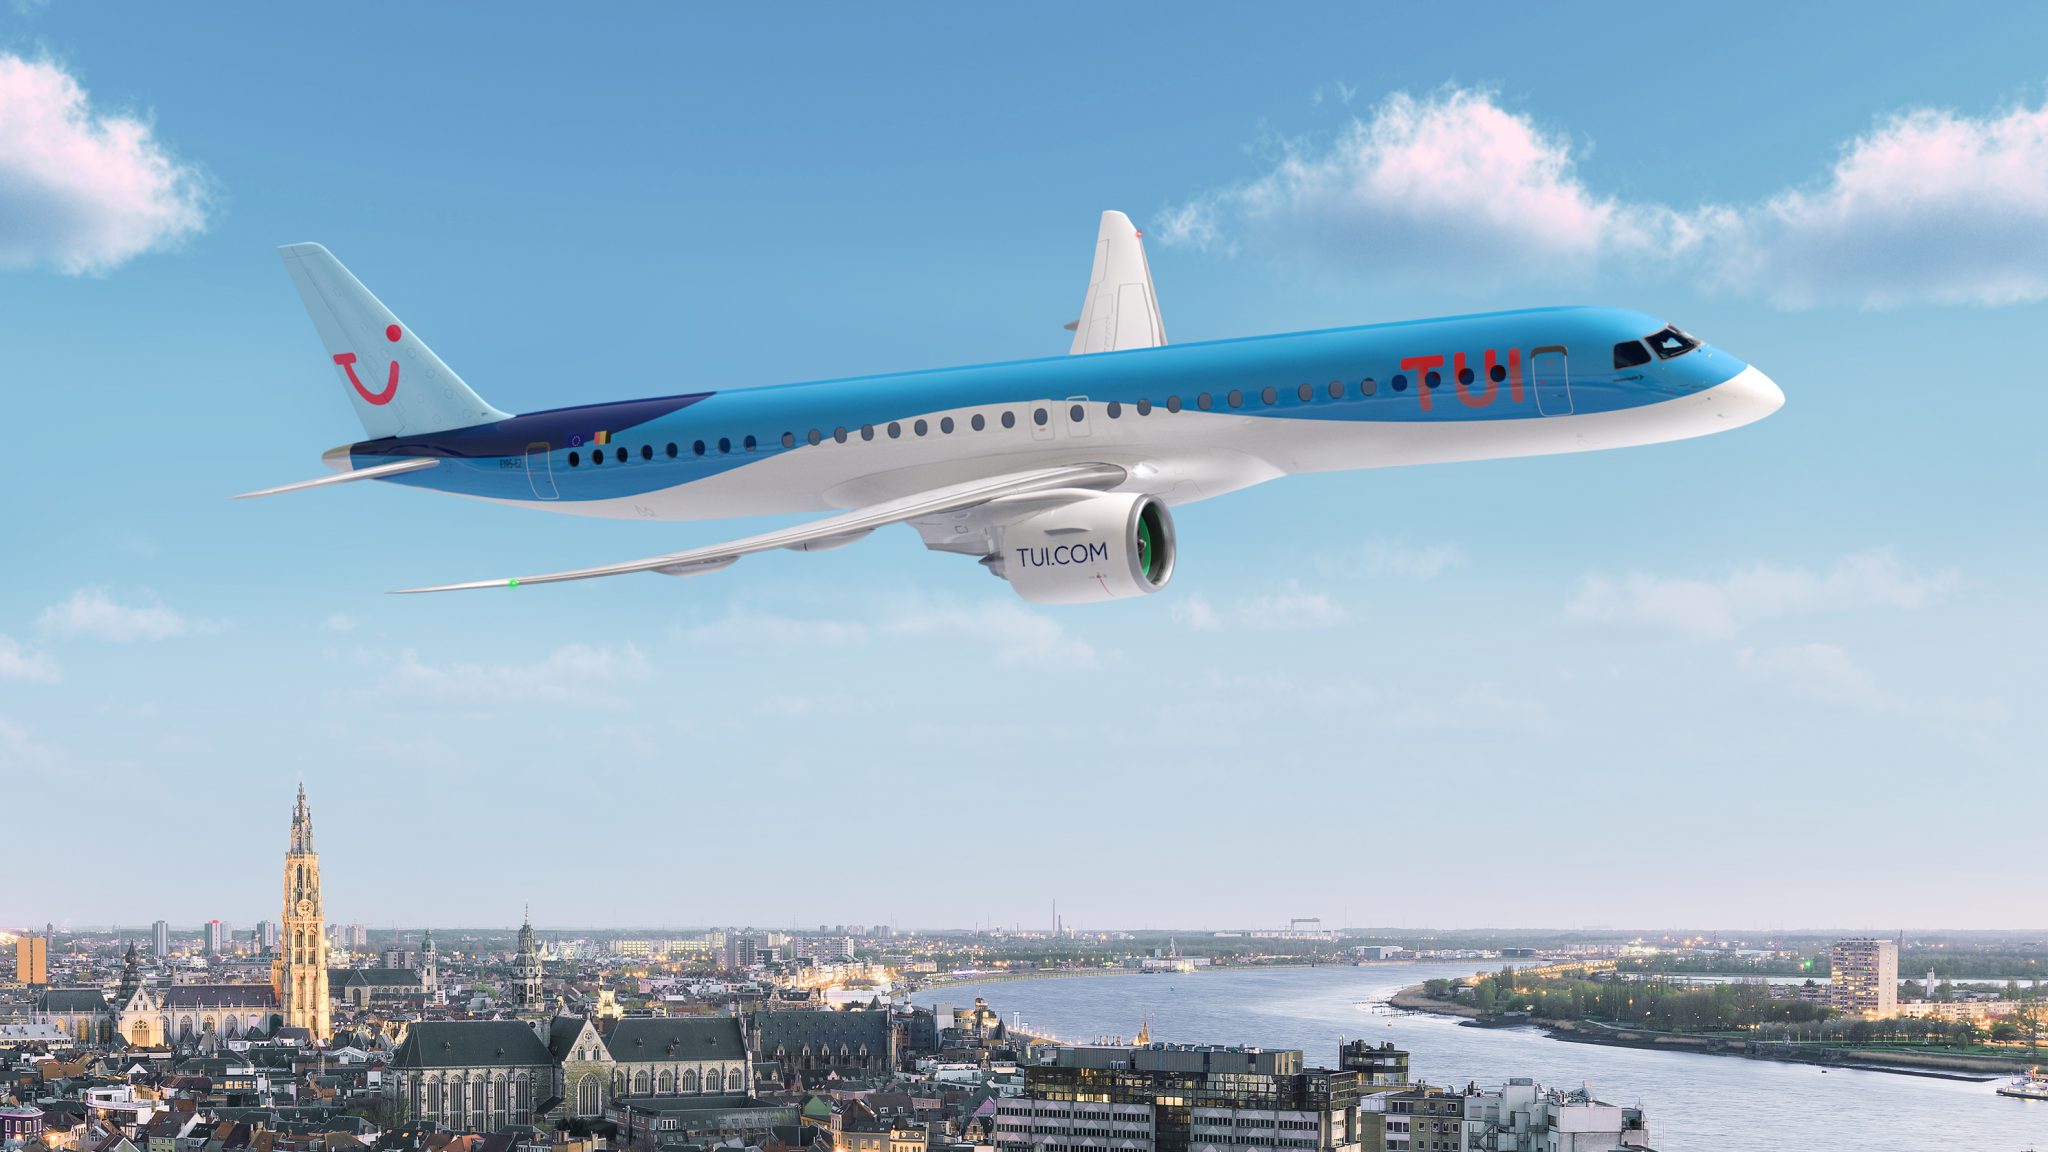 TUI fly Belgium propose trois nouvelles destinations au départ d'Anvers